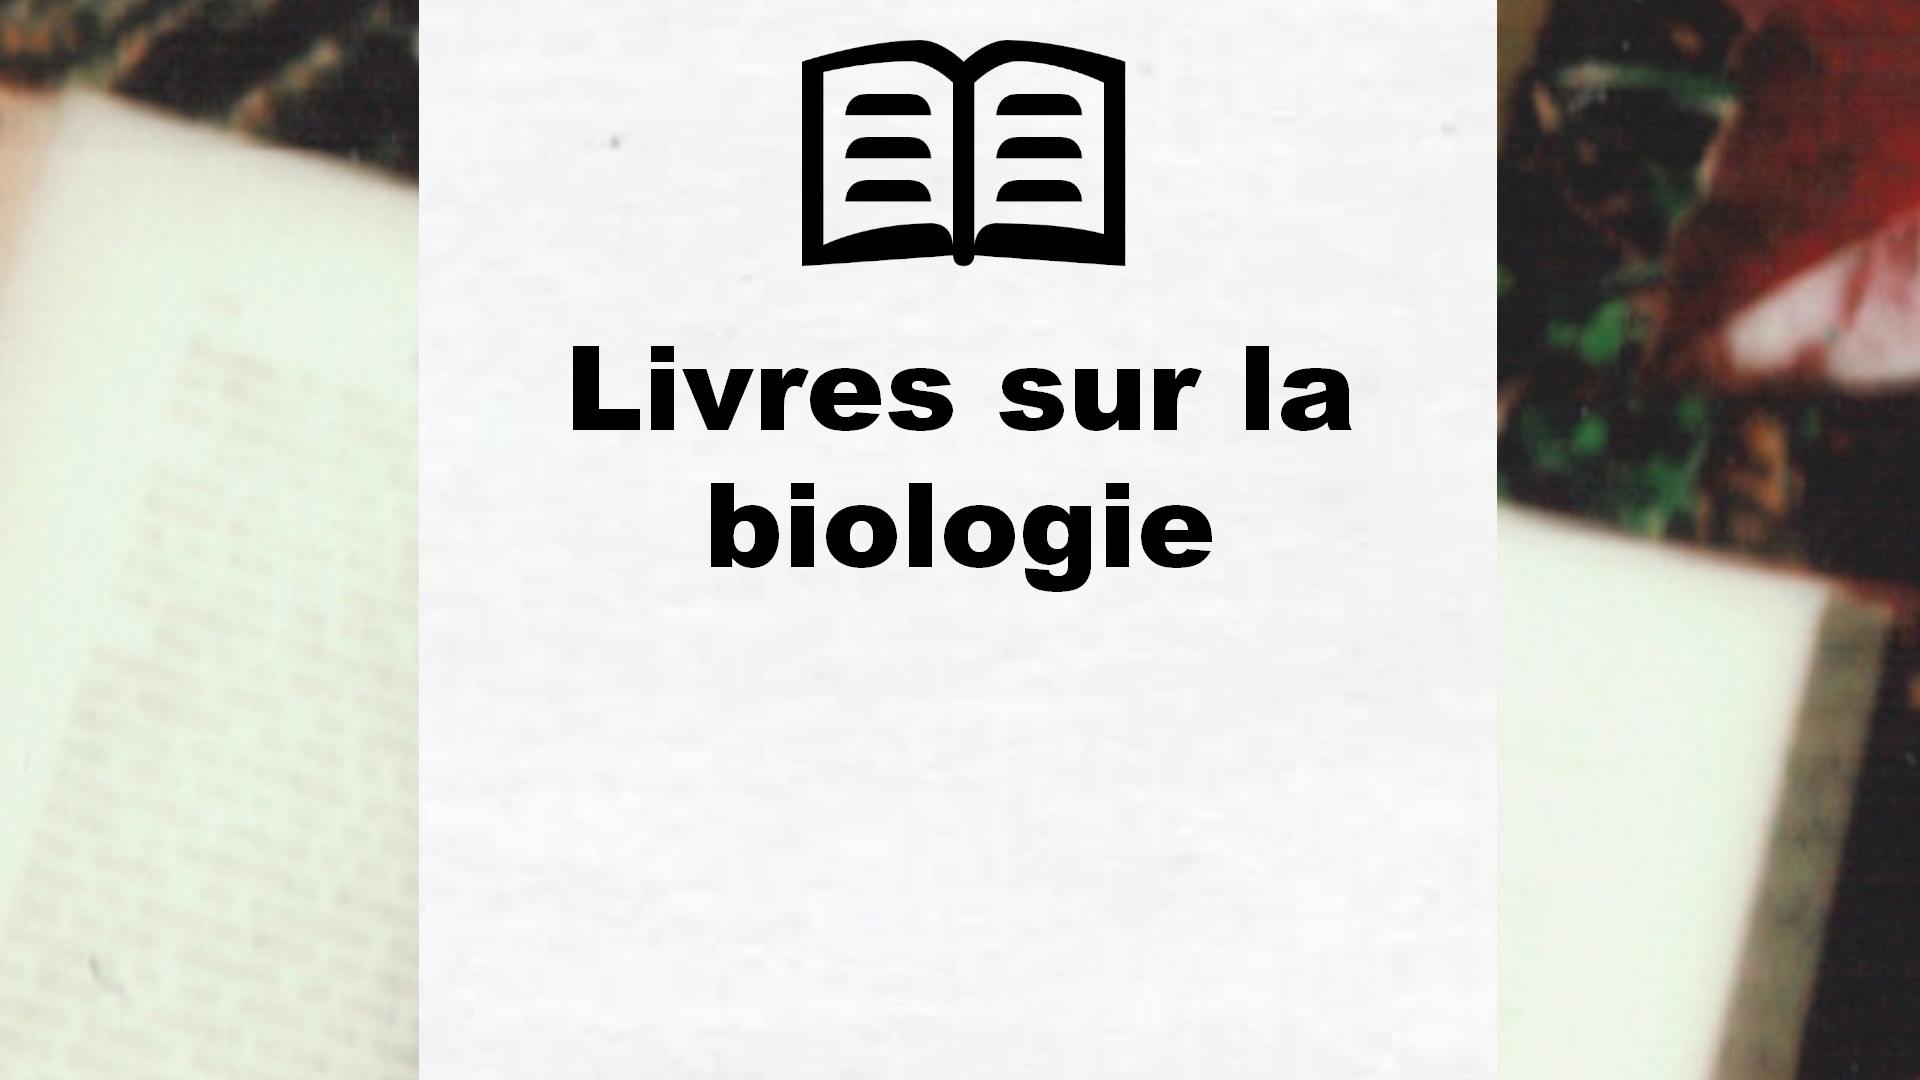 Livres sur la biologie